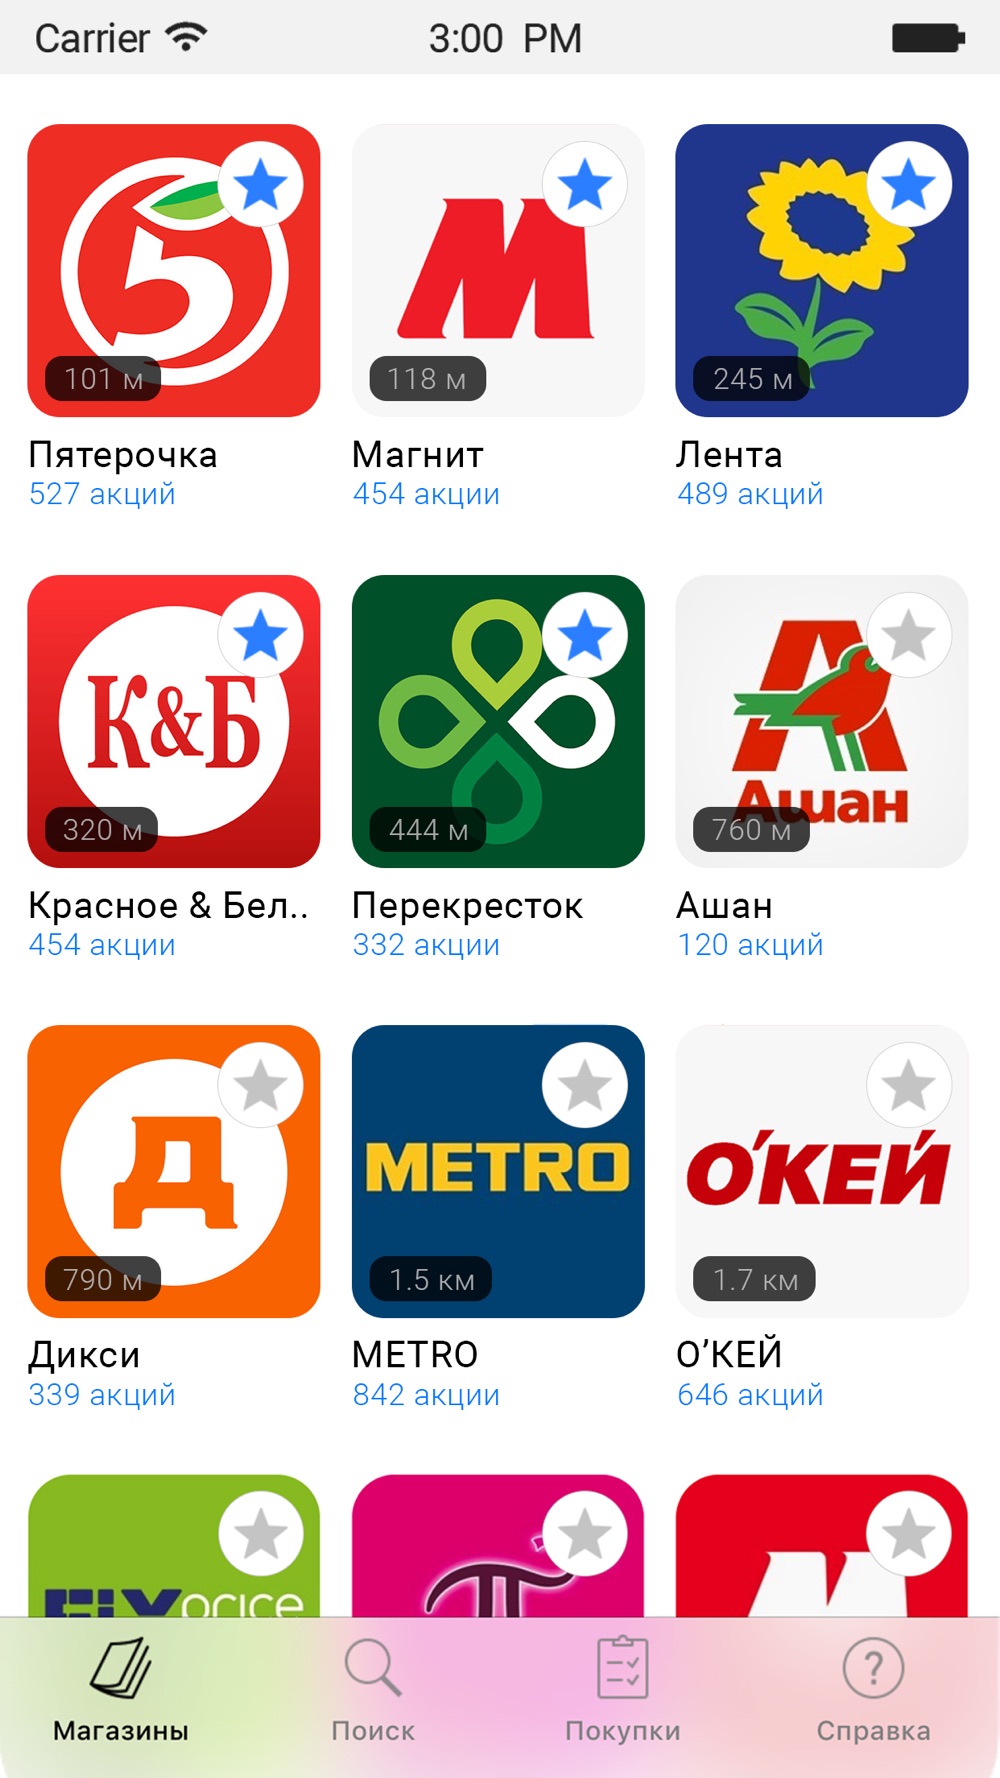 Акции Всех Магазинов России Сайт